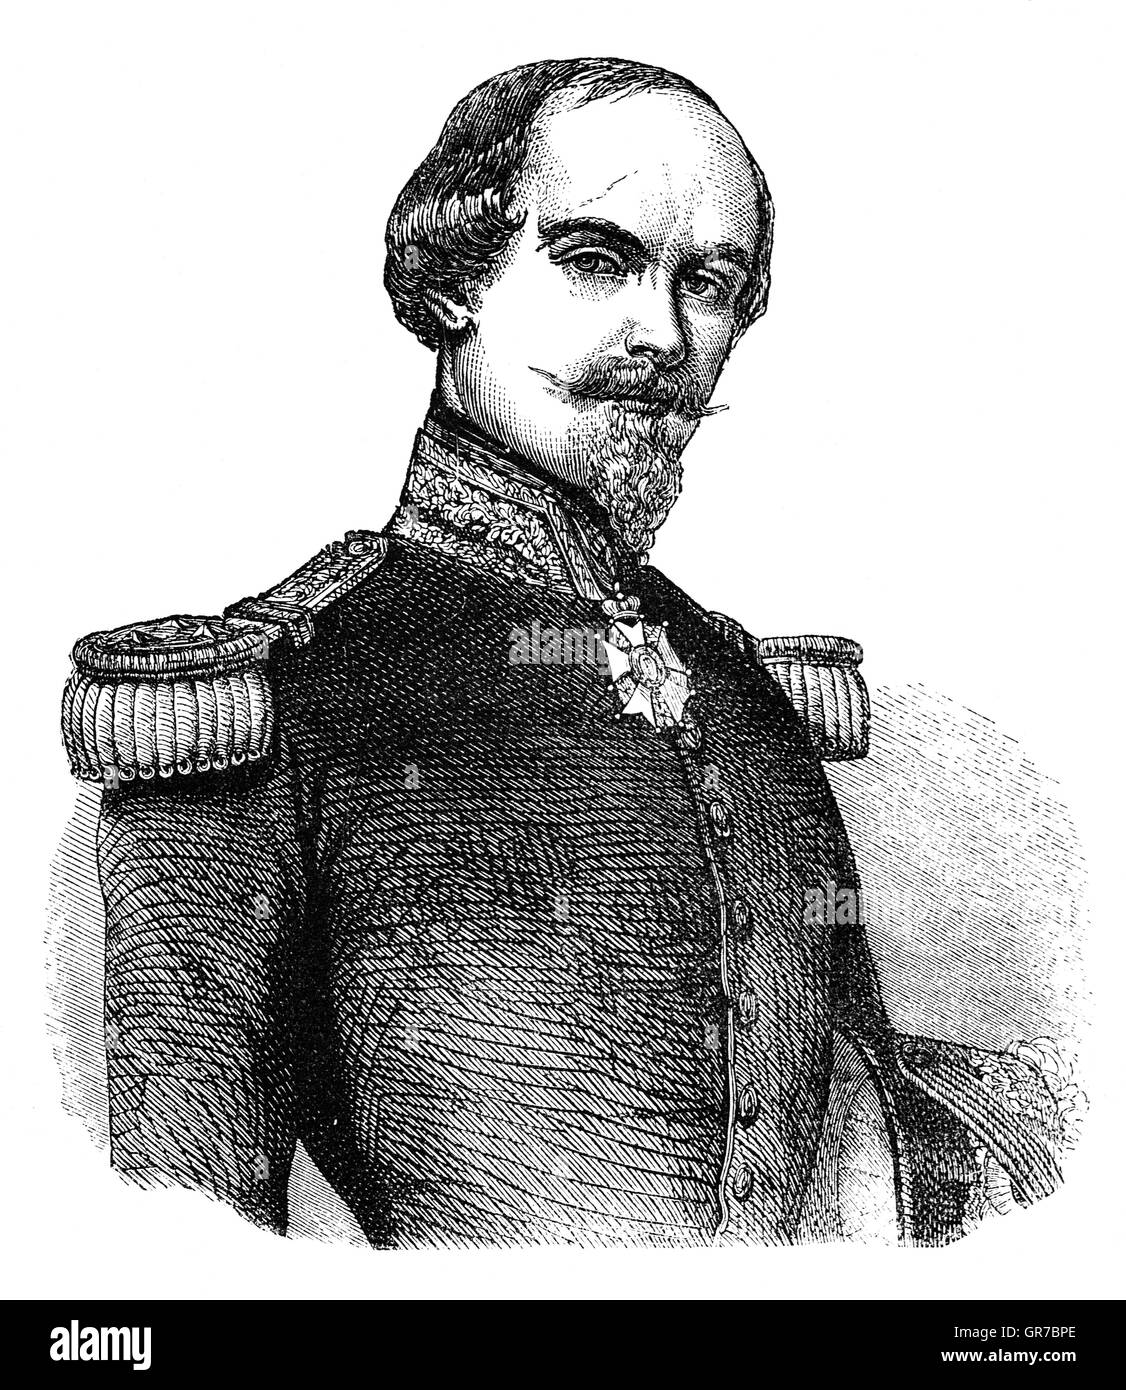 François certain de Canrobert, généralement connu sous le nom de François Certain-Canrobert et plus tard simplement comme Maréchal Canrobert (27 juin 1809 - 28 janvier 1895), était un maréchal de France. Dans la guerre de Crimée, il commande une division à la bataille de l'Alma, où il a été blessé deux fois. Banque D'Images